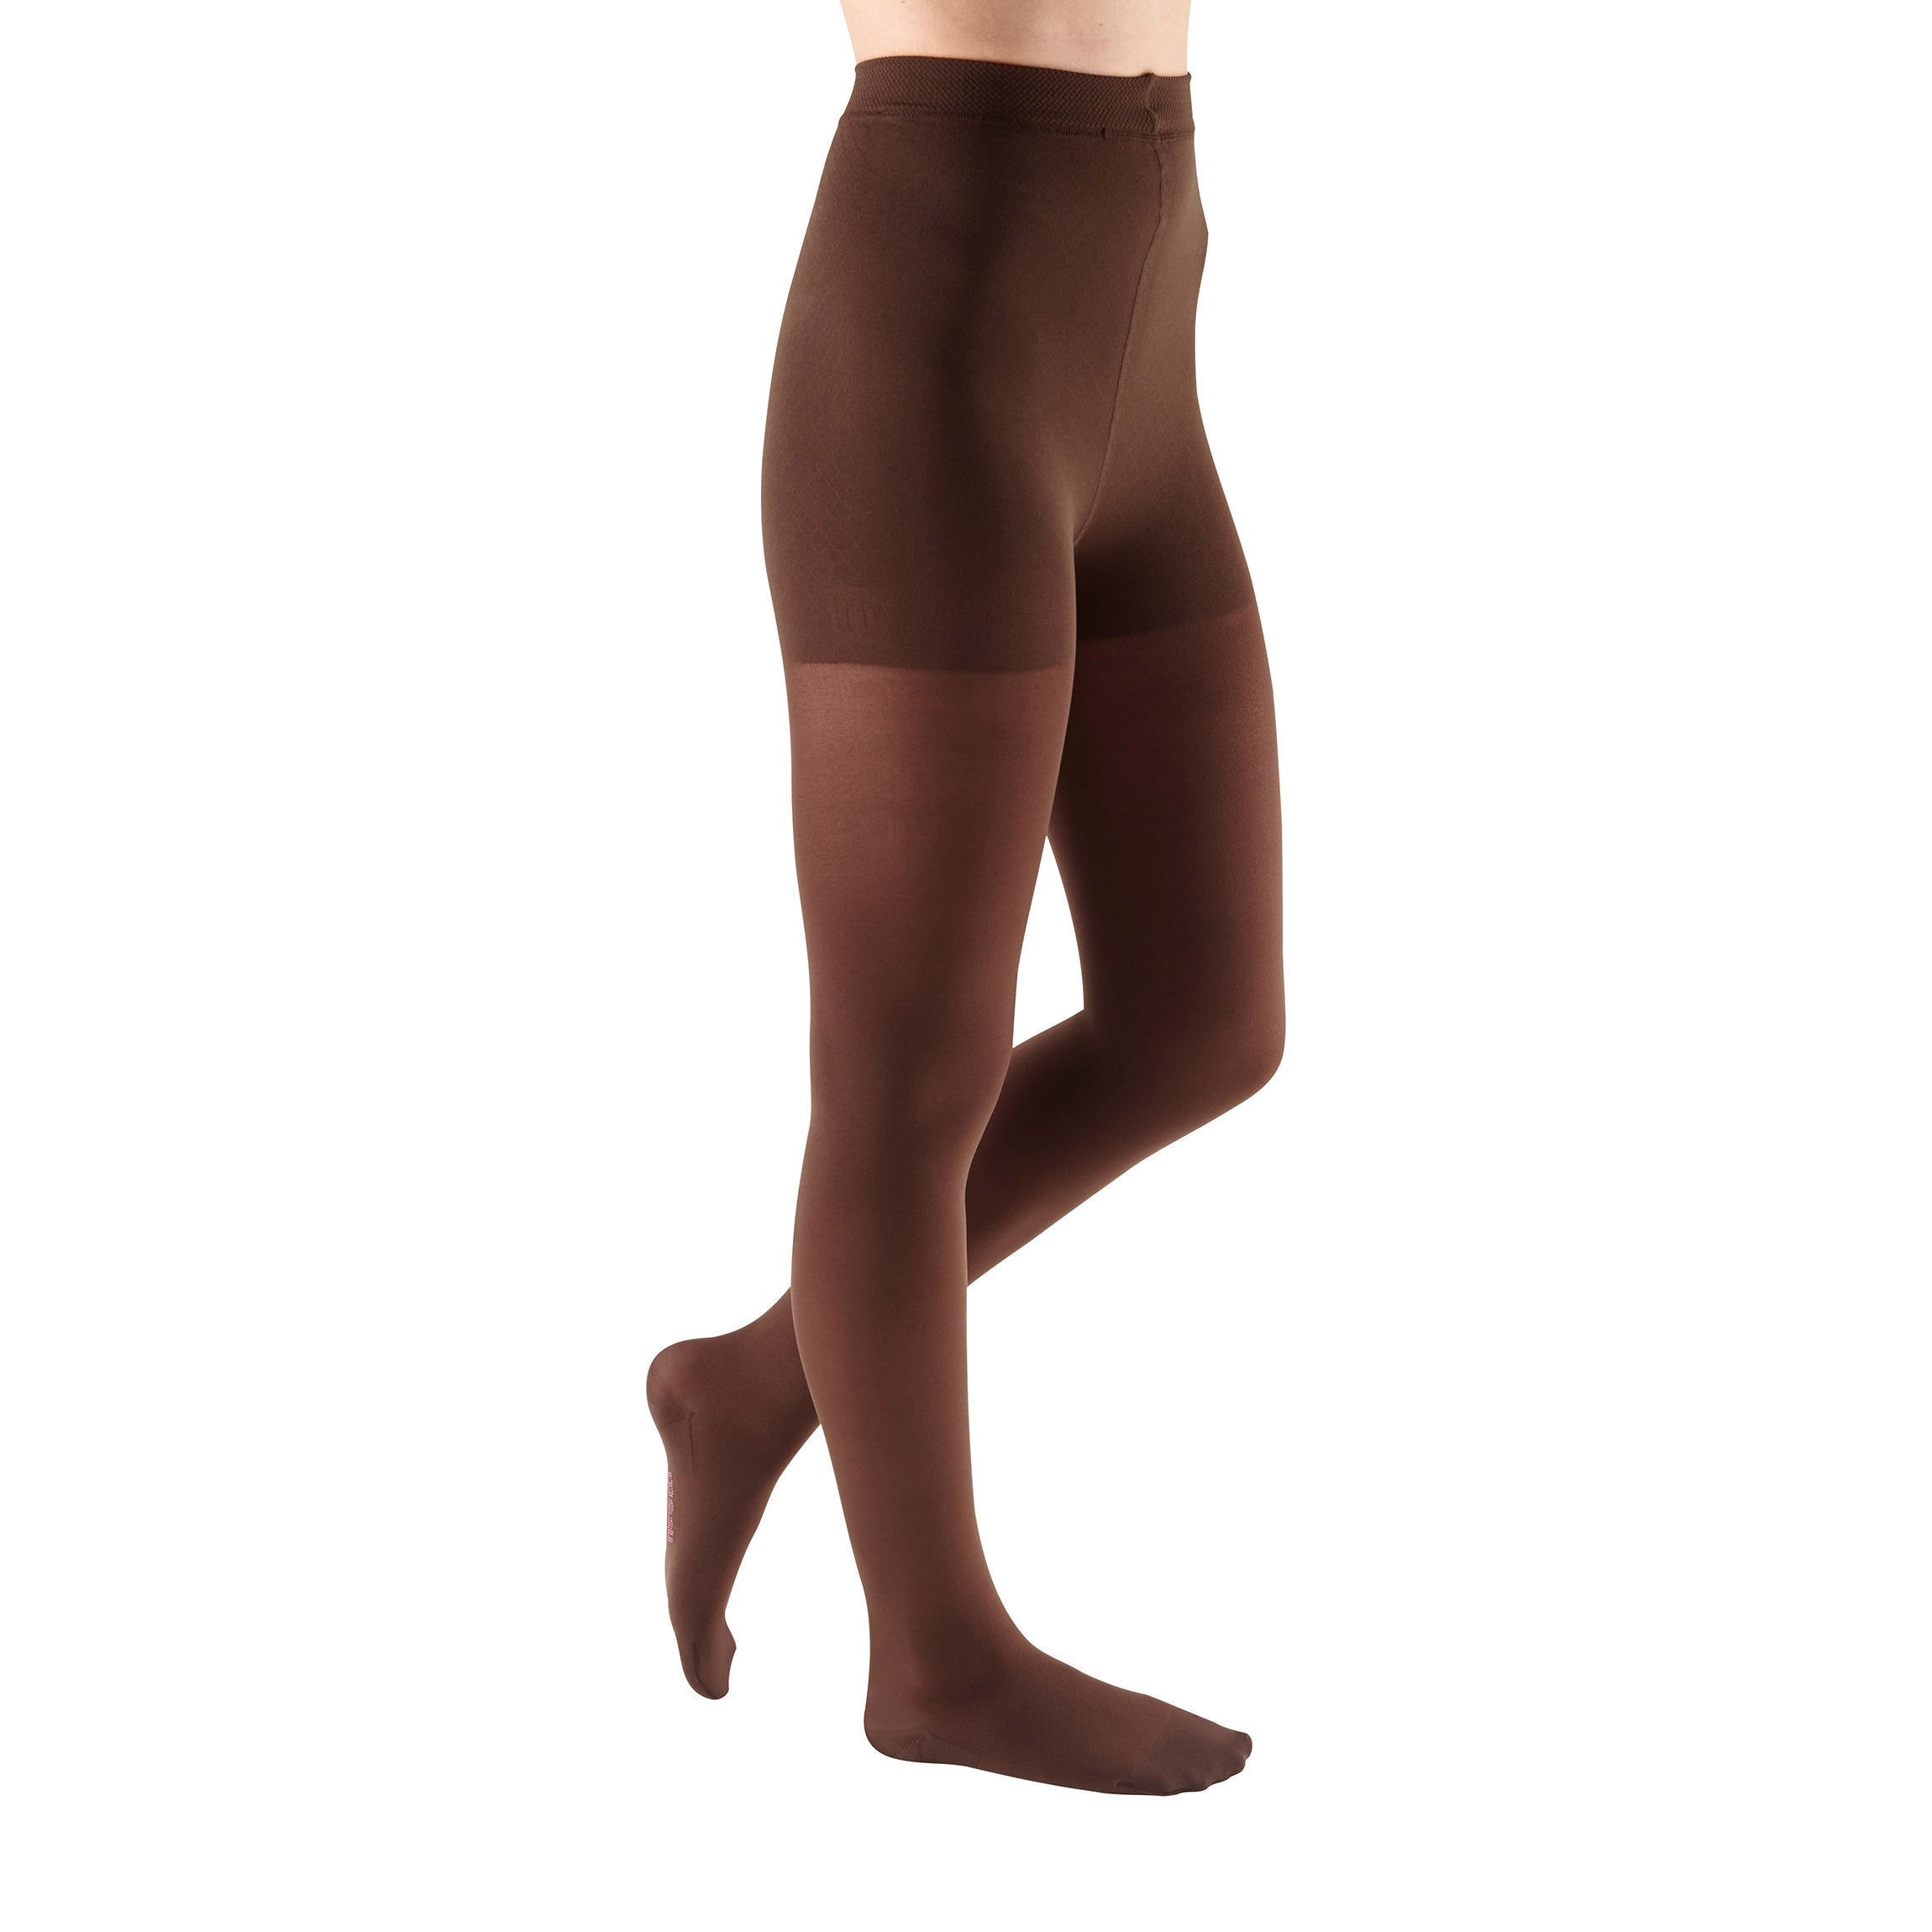 Mediven Sheer & Soft Women's Thigh High 15-20 mmHg, Open Toe